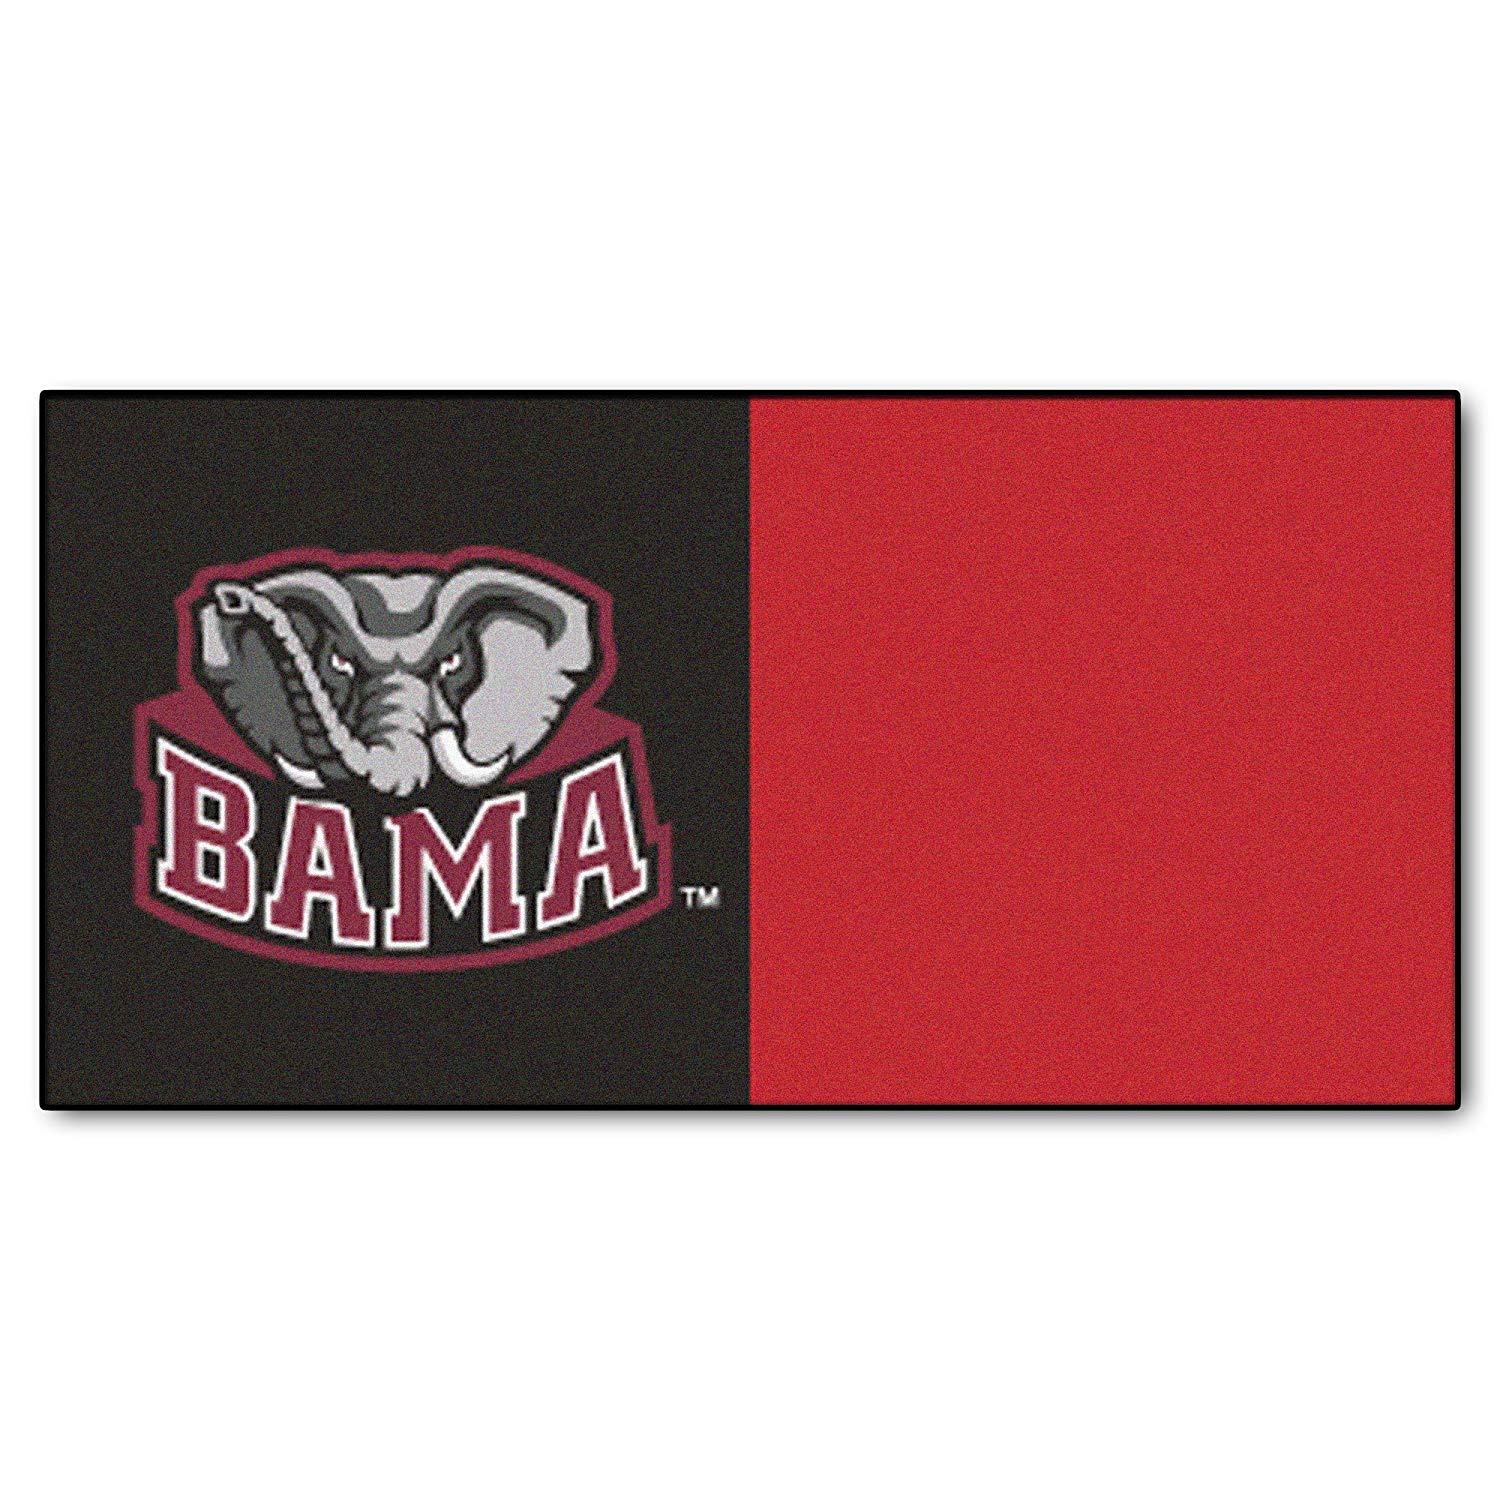 Bama Logo - Amazon.com : University of Alabama Carpet Tiles (Bama Logo) : Sports ...